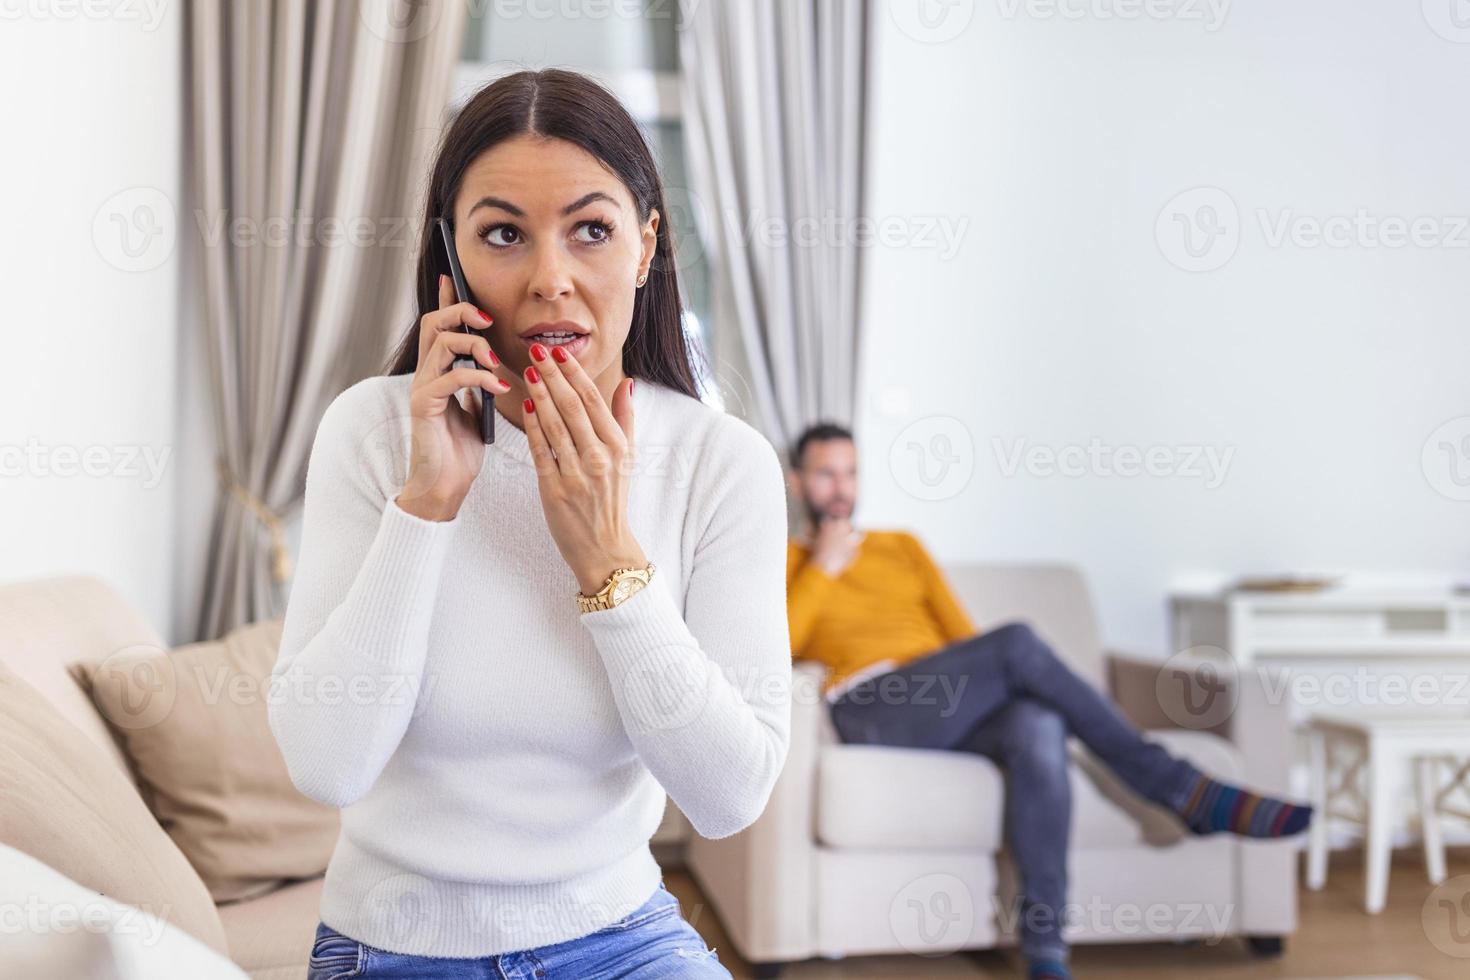 la mujer le dio la espalda al hombre, hablando por teléfono con su amante, el novio sentado en la parte de atrás viendo la televisión. concepto de engaño e infidelidad foto